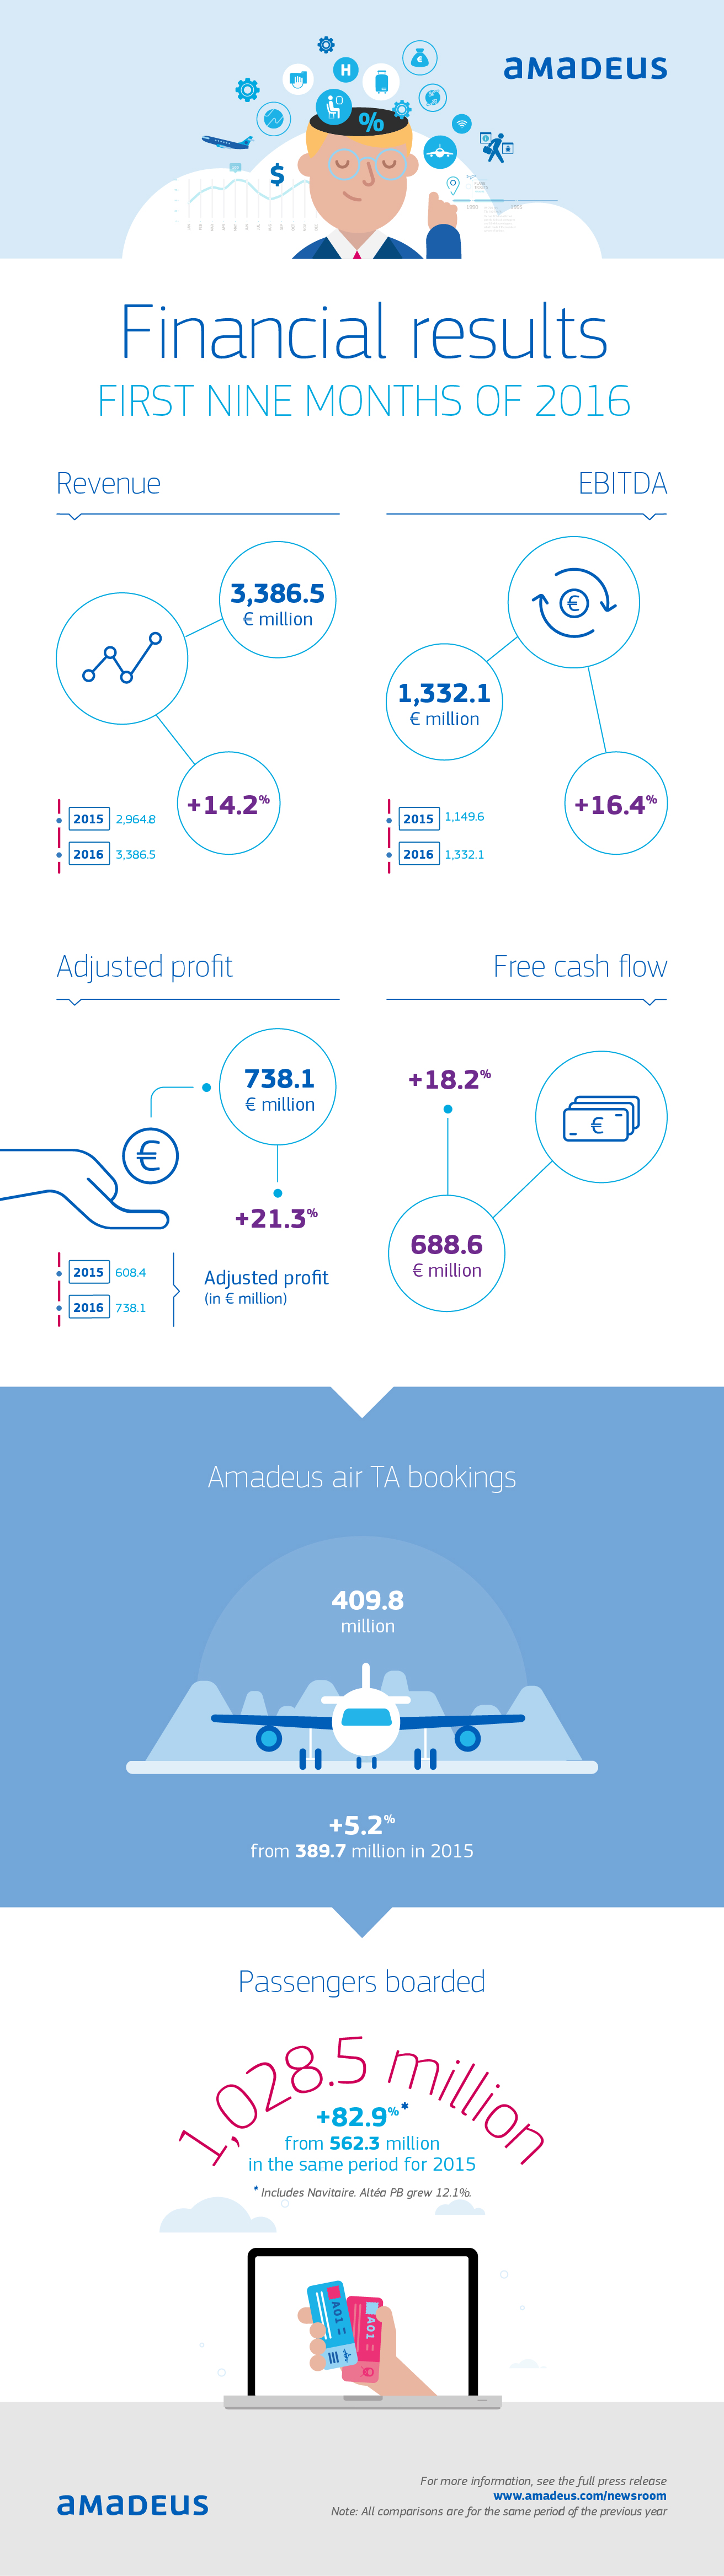 Amadeus affiche des résultats solides depuis début 2016